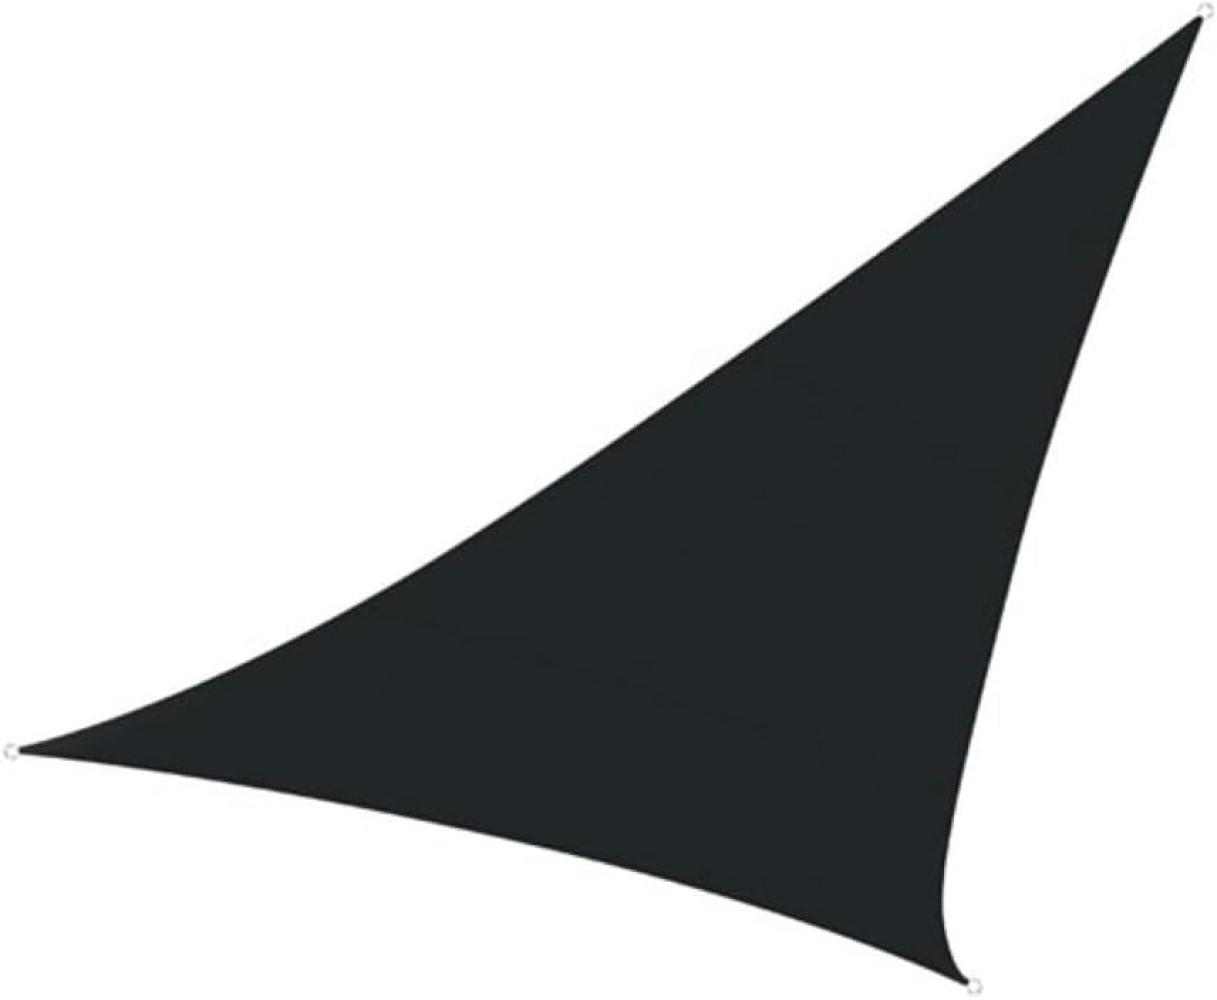 Sonnensegel Dreieck wasserdurchlässig Dunkelgrau 3,6m - Sonnenschutz für Balkon Bild 1